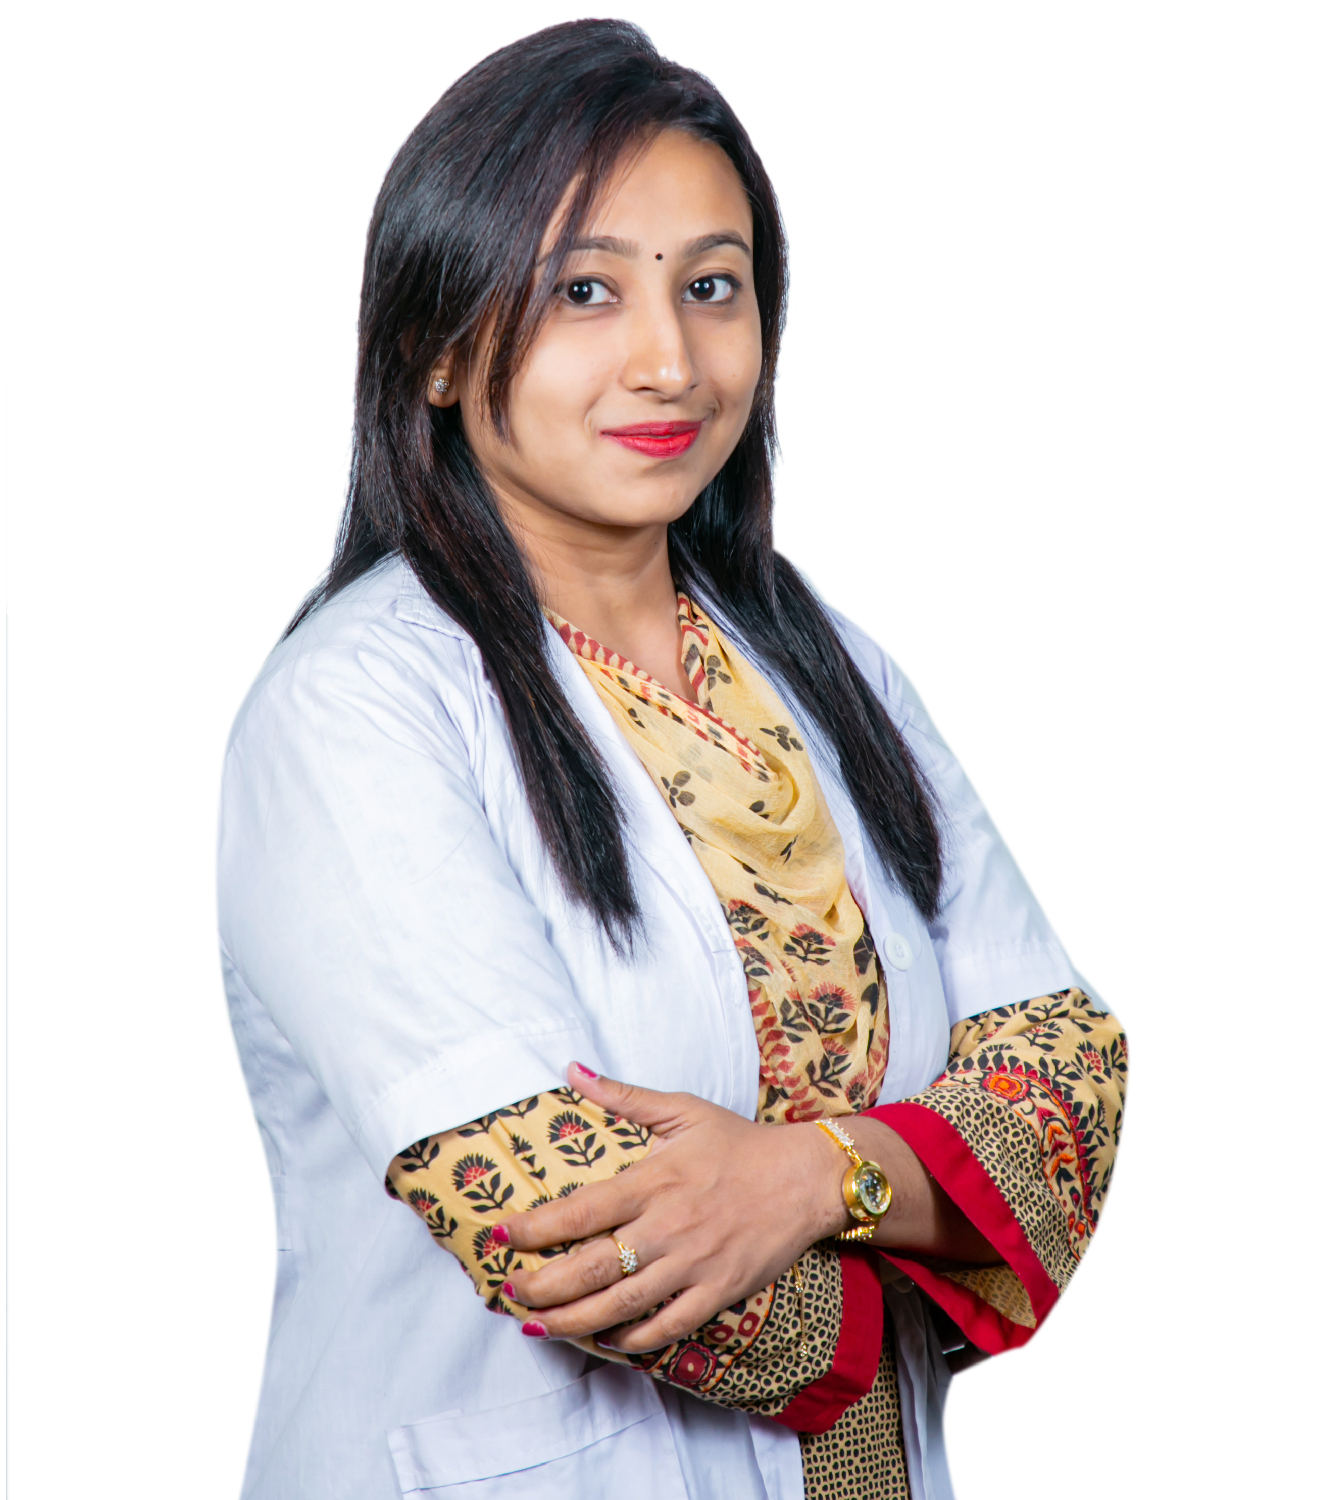 Dr. Afsana Shahab Nisha